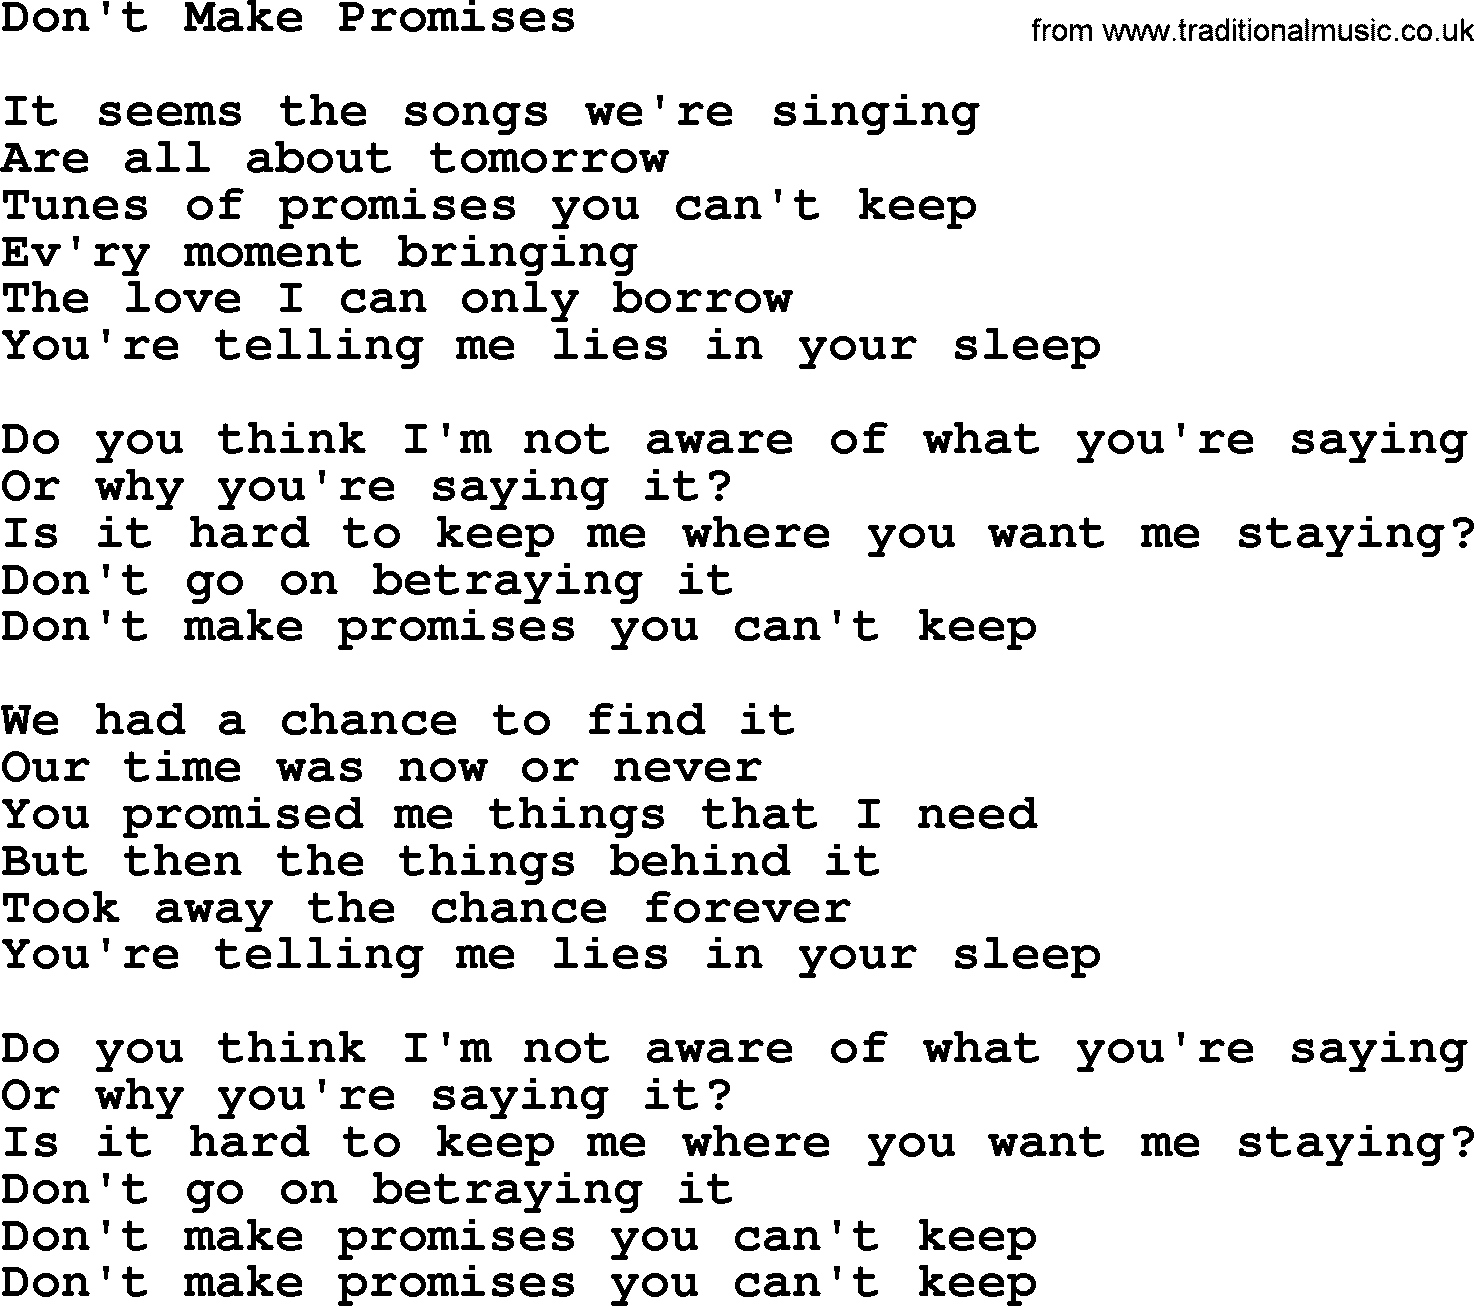 Joan Baez song Don't Make Promises, lyrics